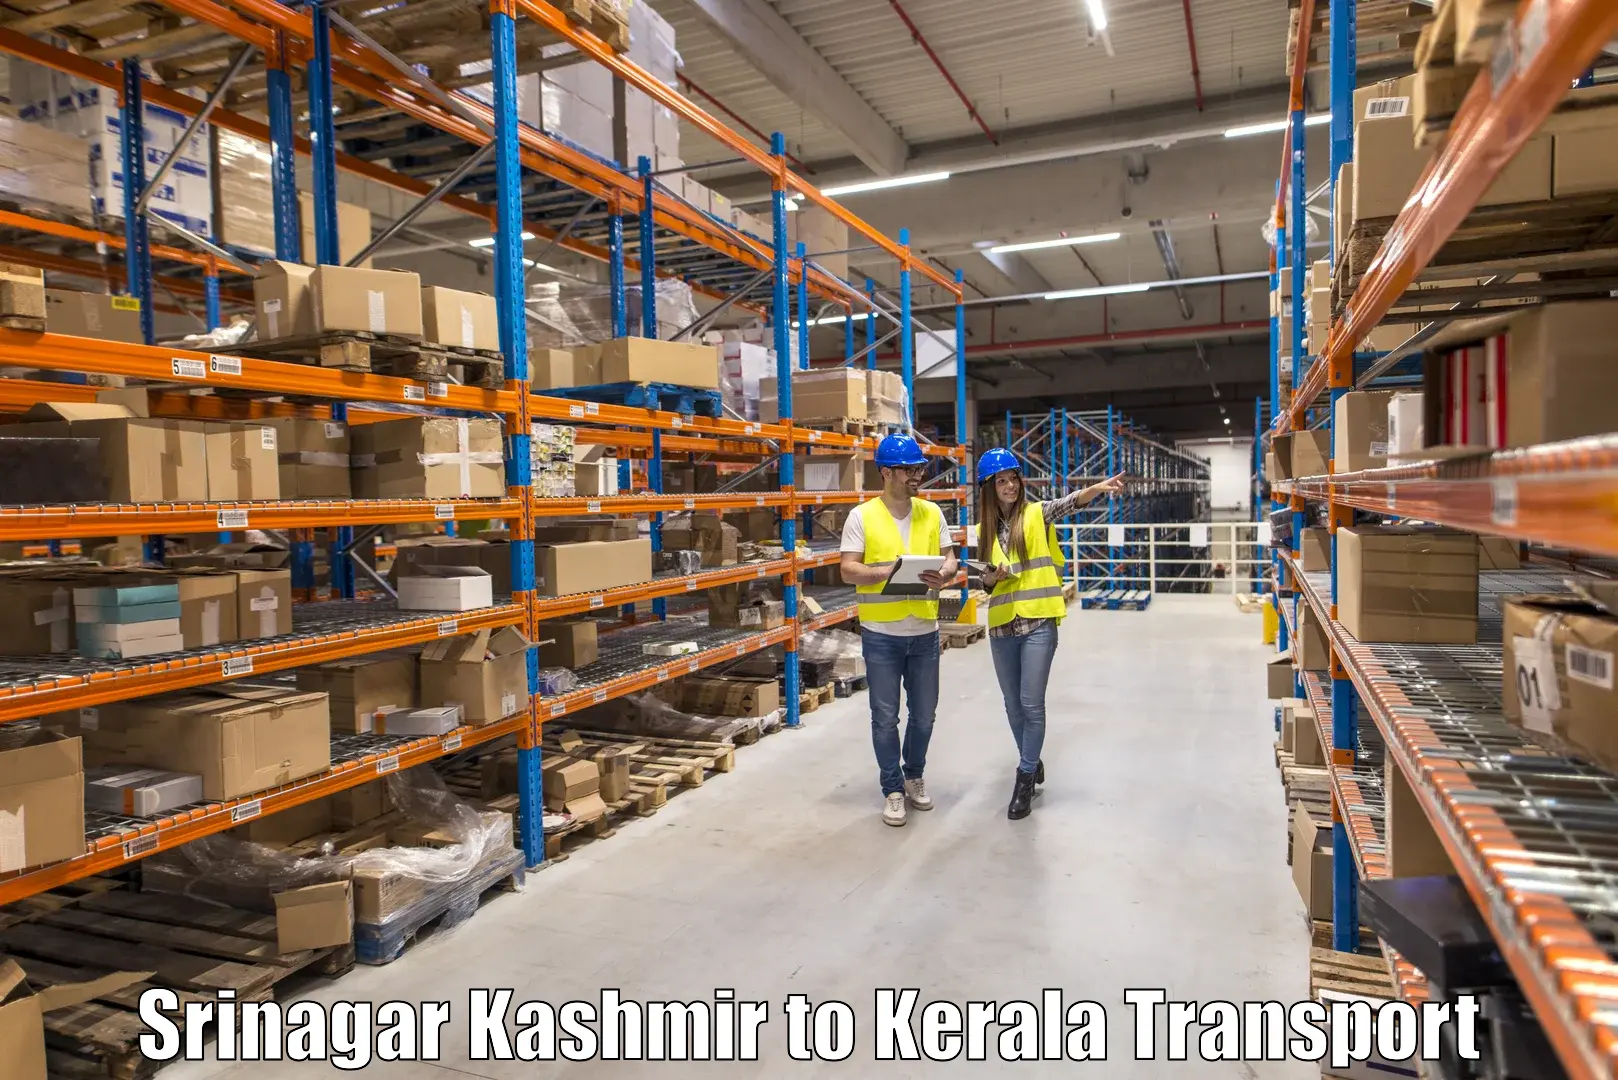 Transportation services Srinagar Kashmir to Akaloor